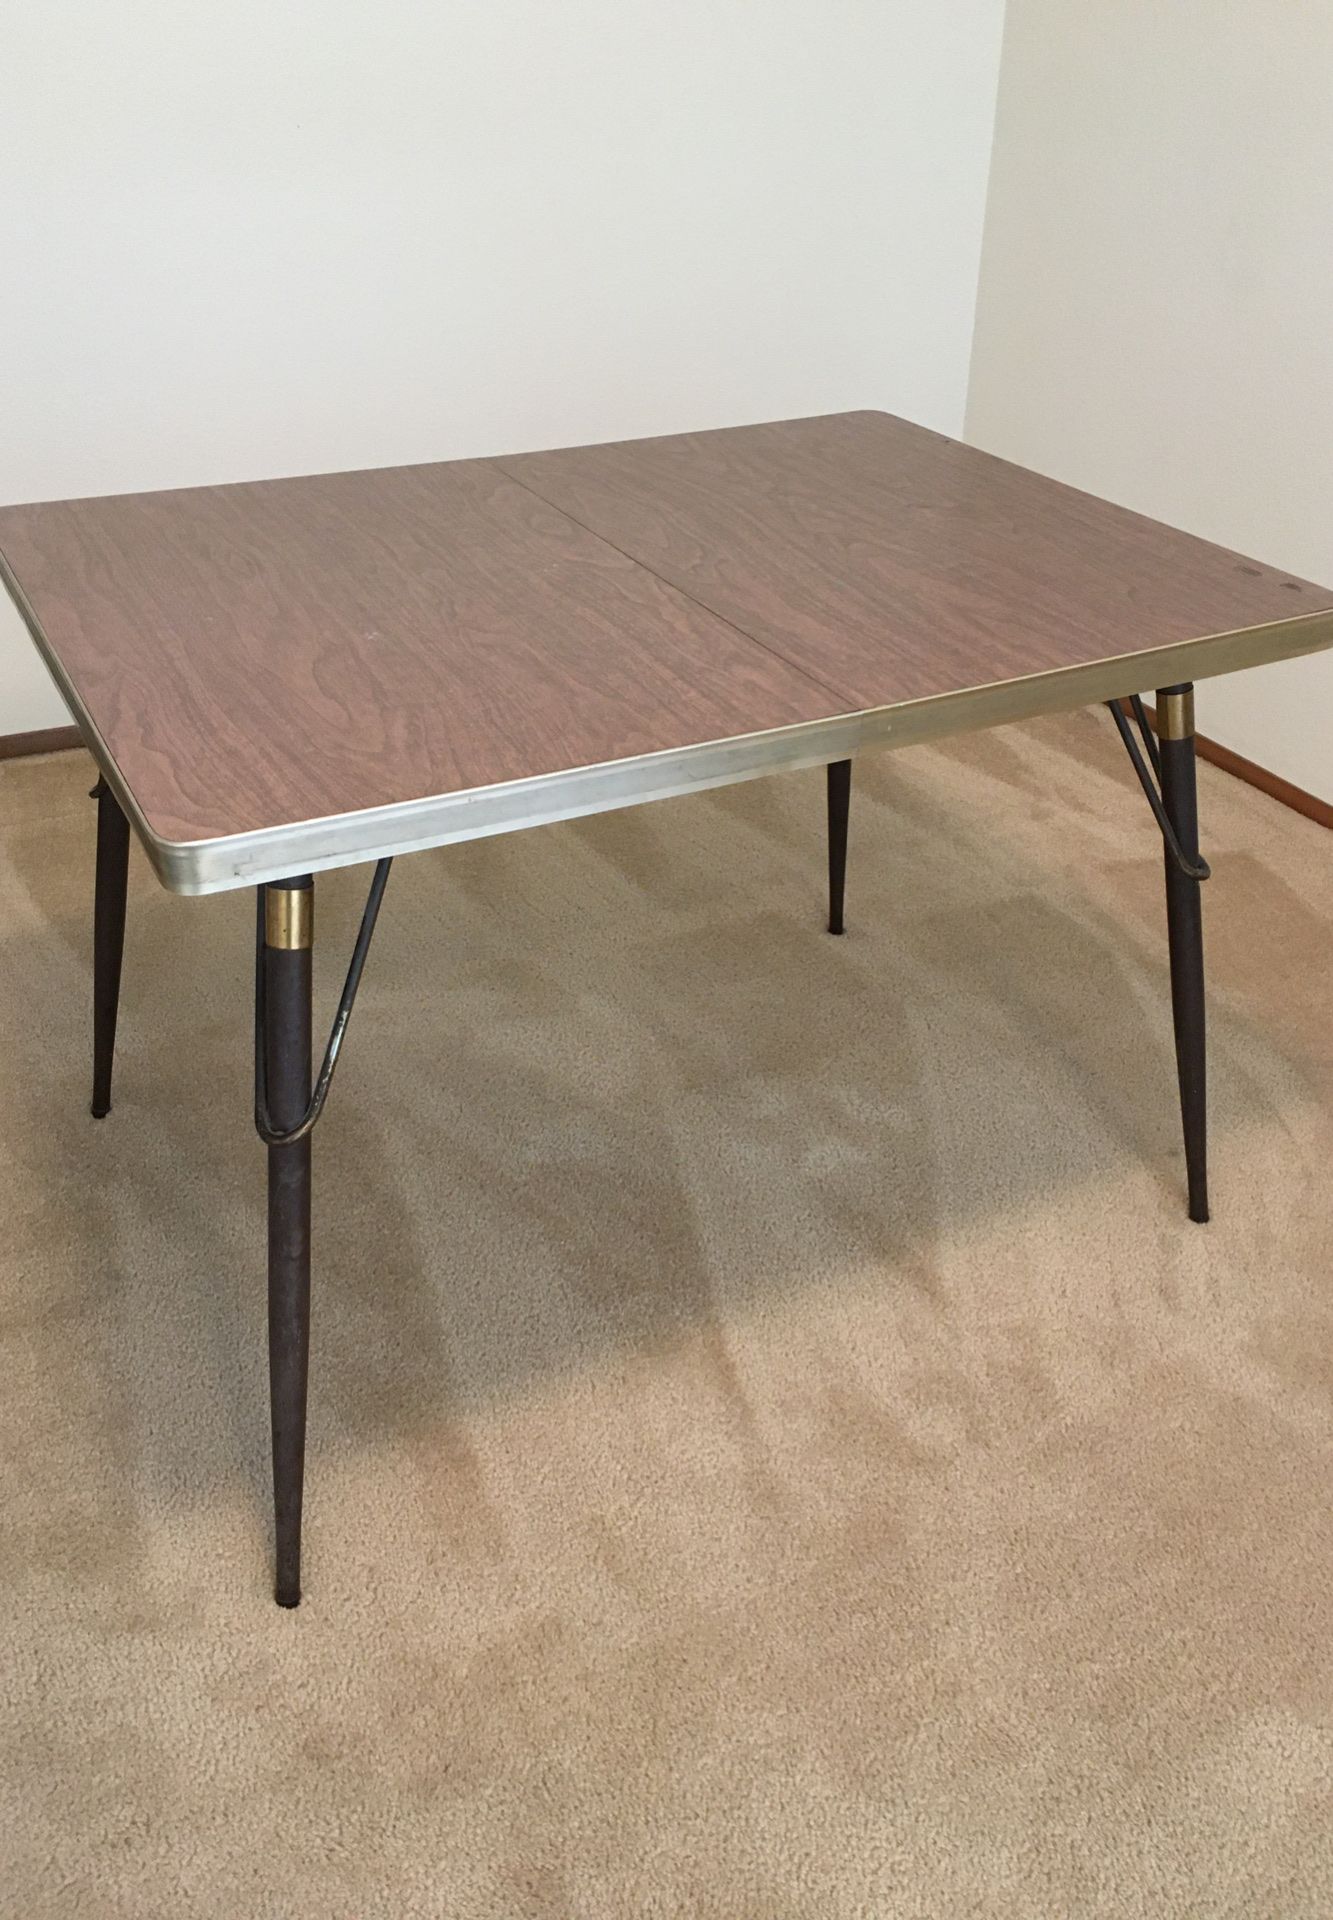 Midcentury modern, Vintage table. Formica top in wood grain pattern, metal legs